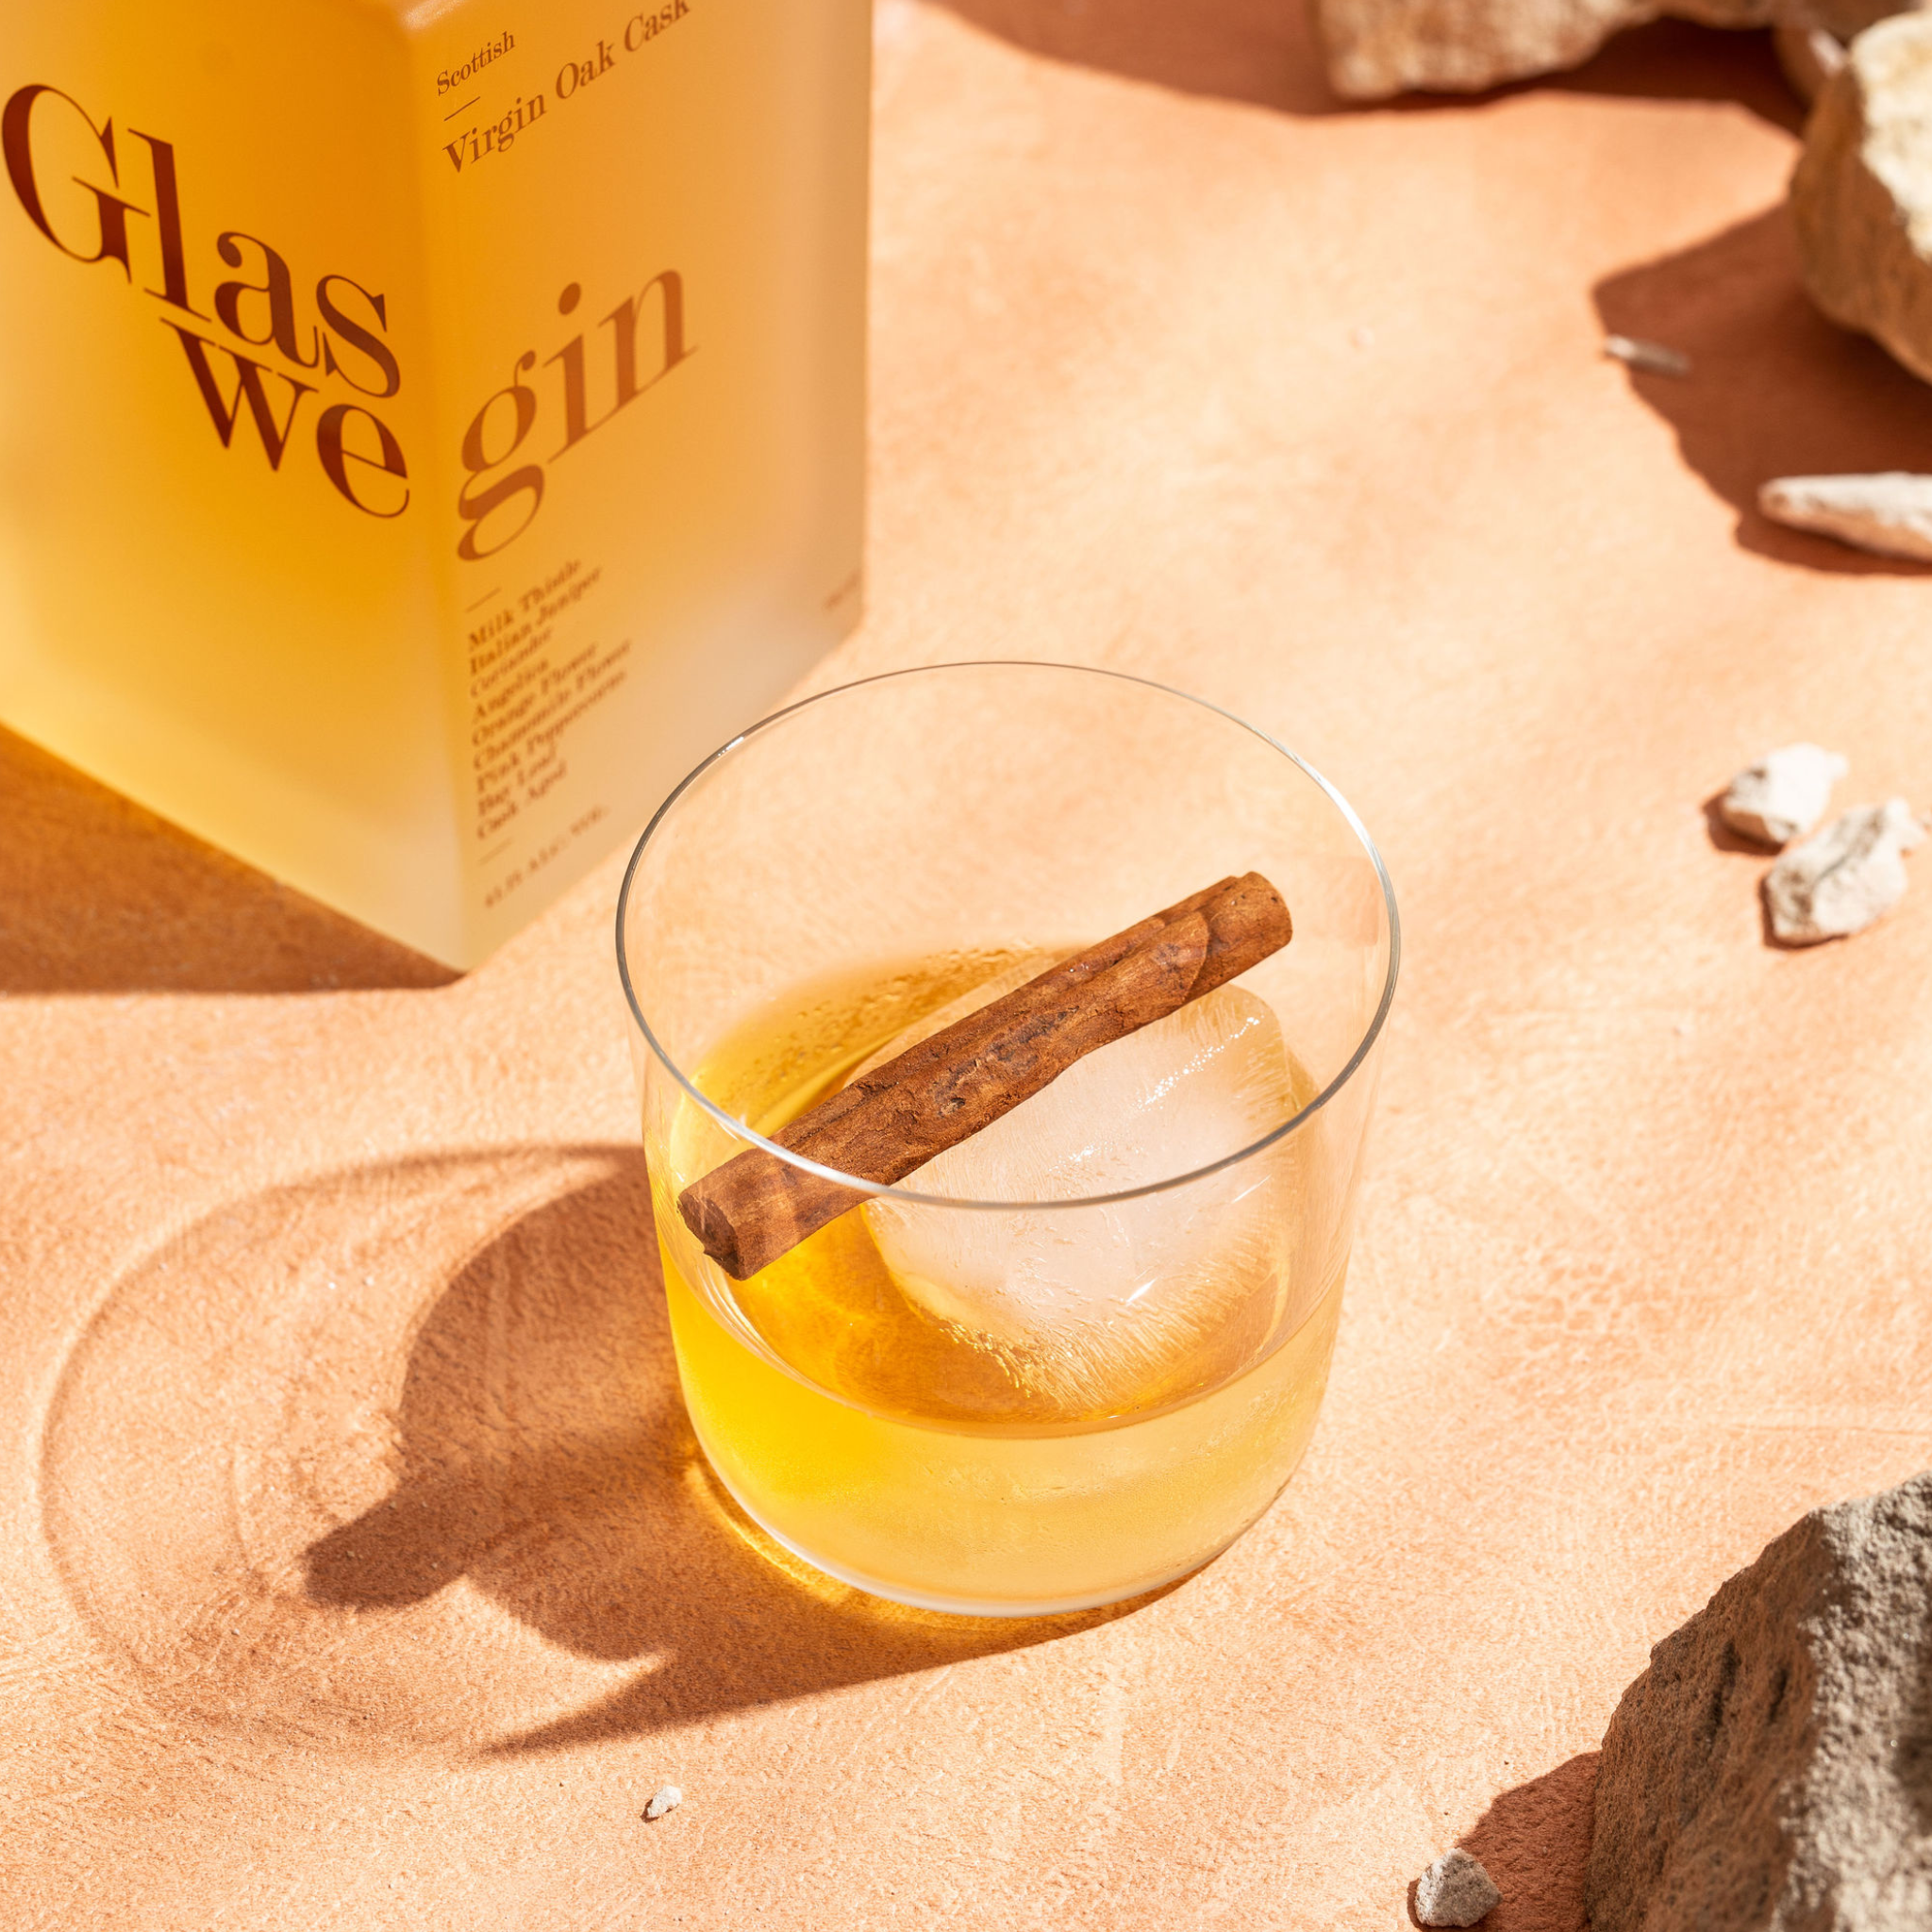 Glaswegin Virgin Oak Cask Gin